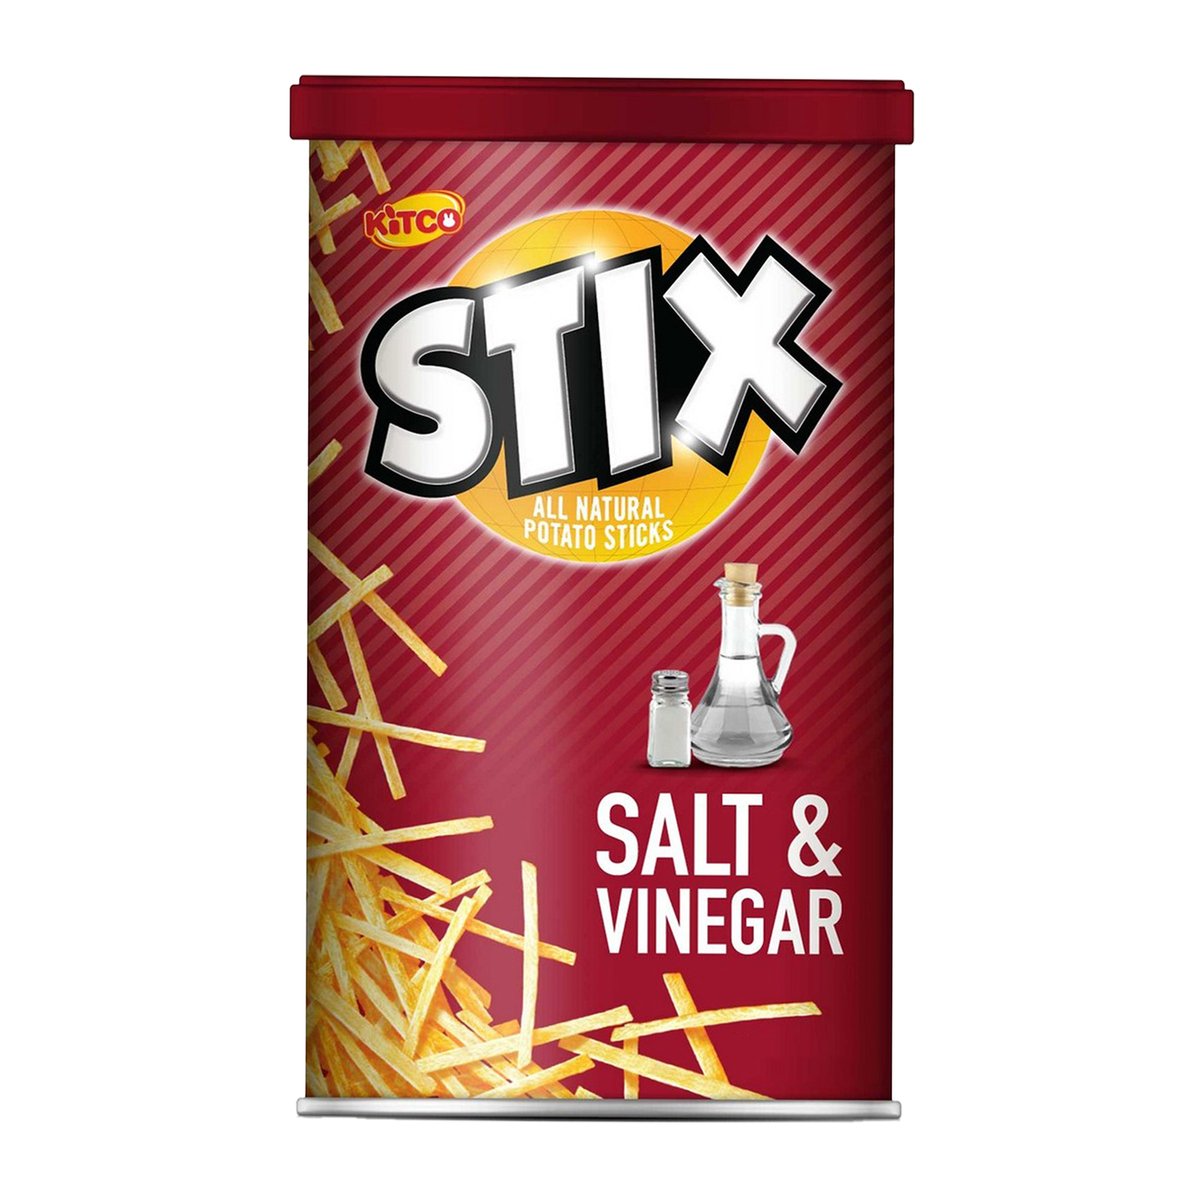 Kitco Stix Salt & Vinegar Potato Sticks 6 x 40 g